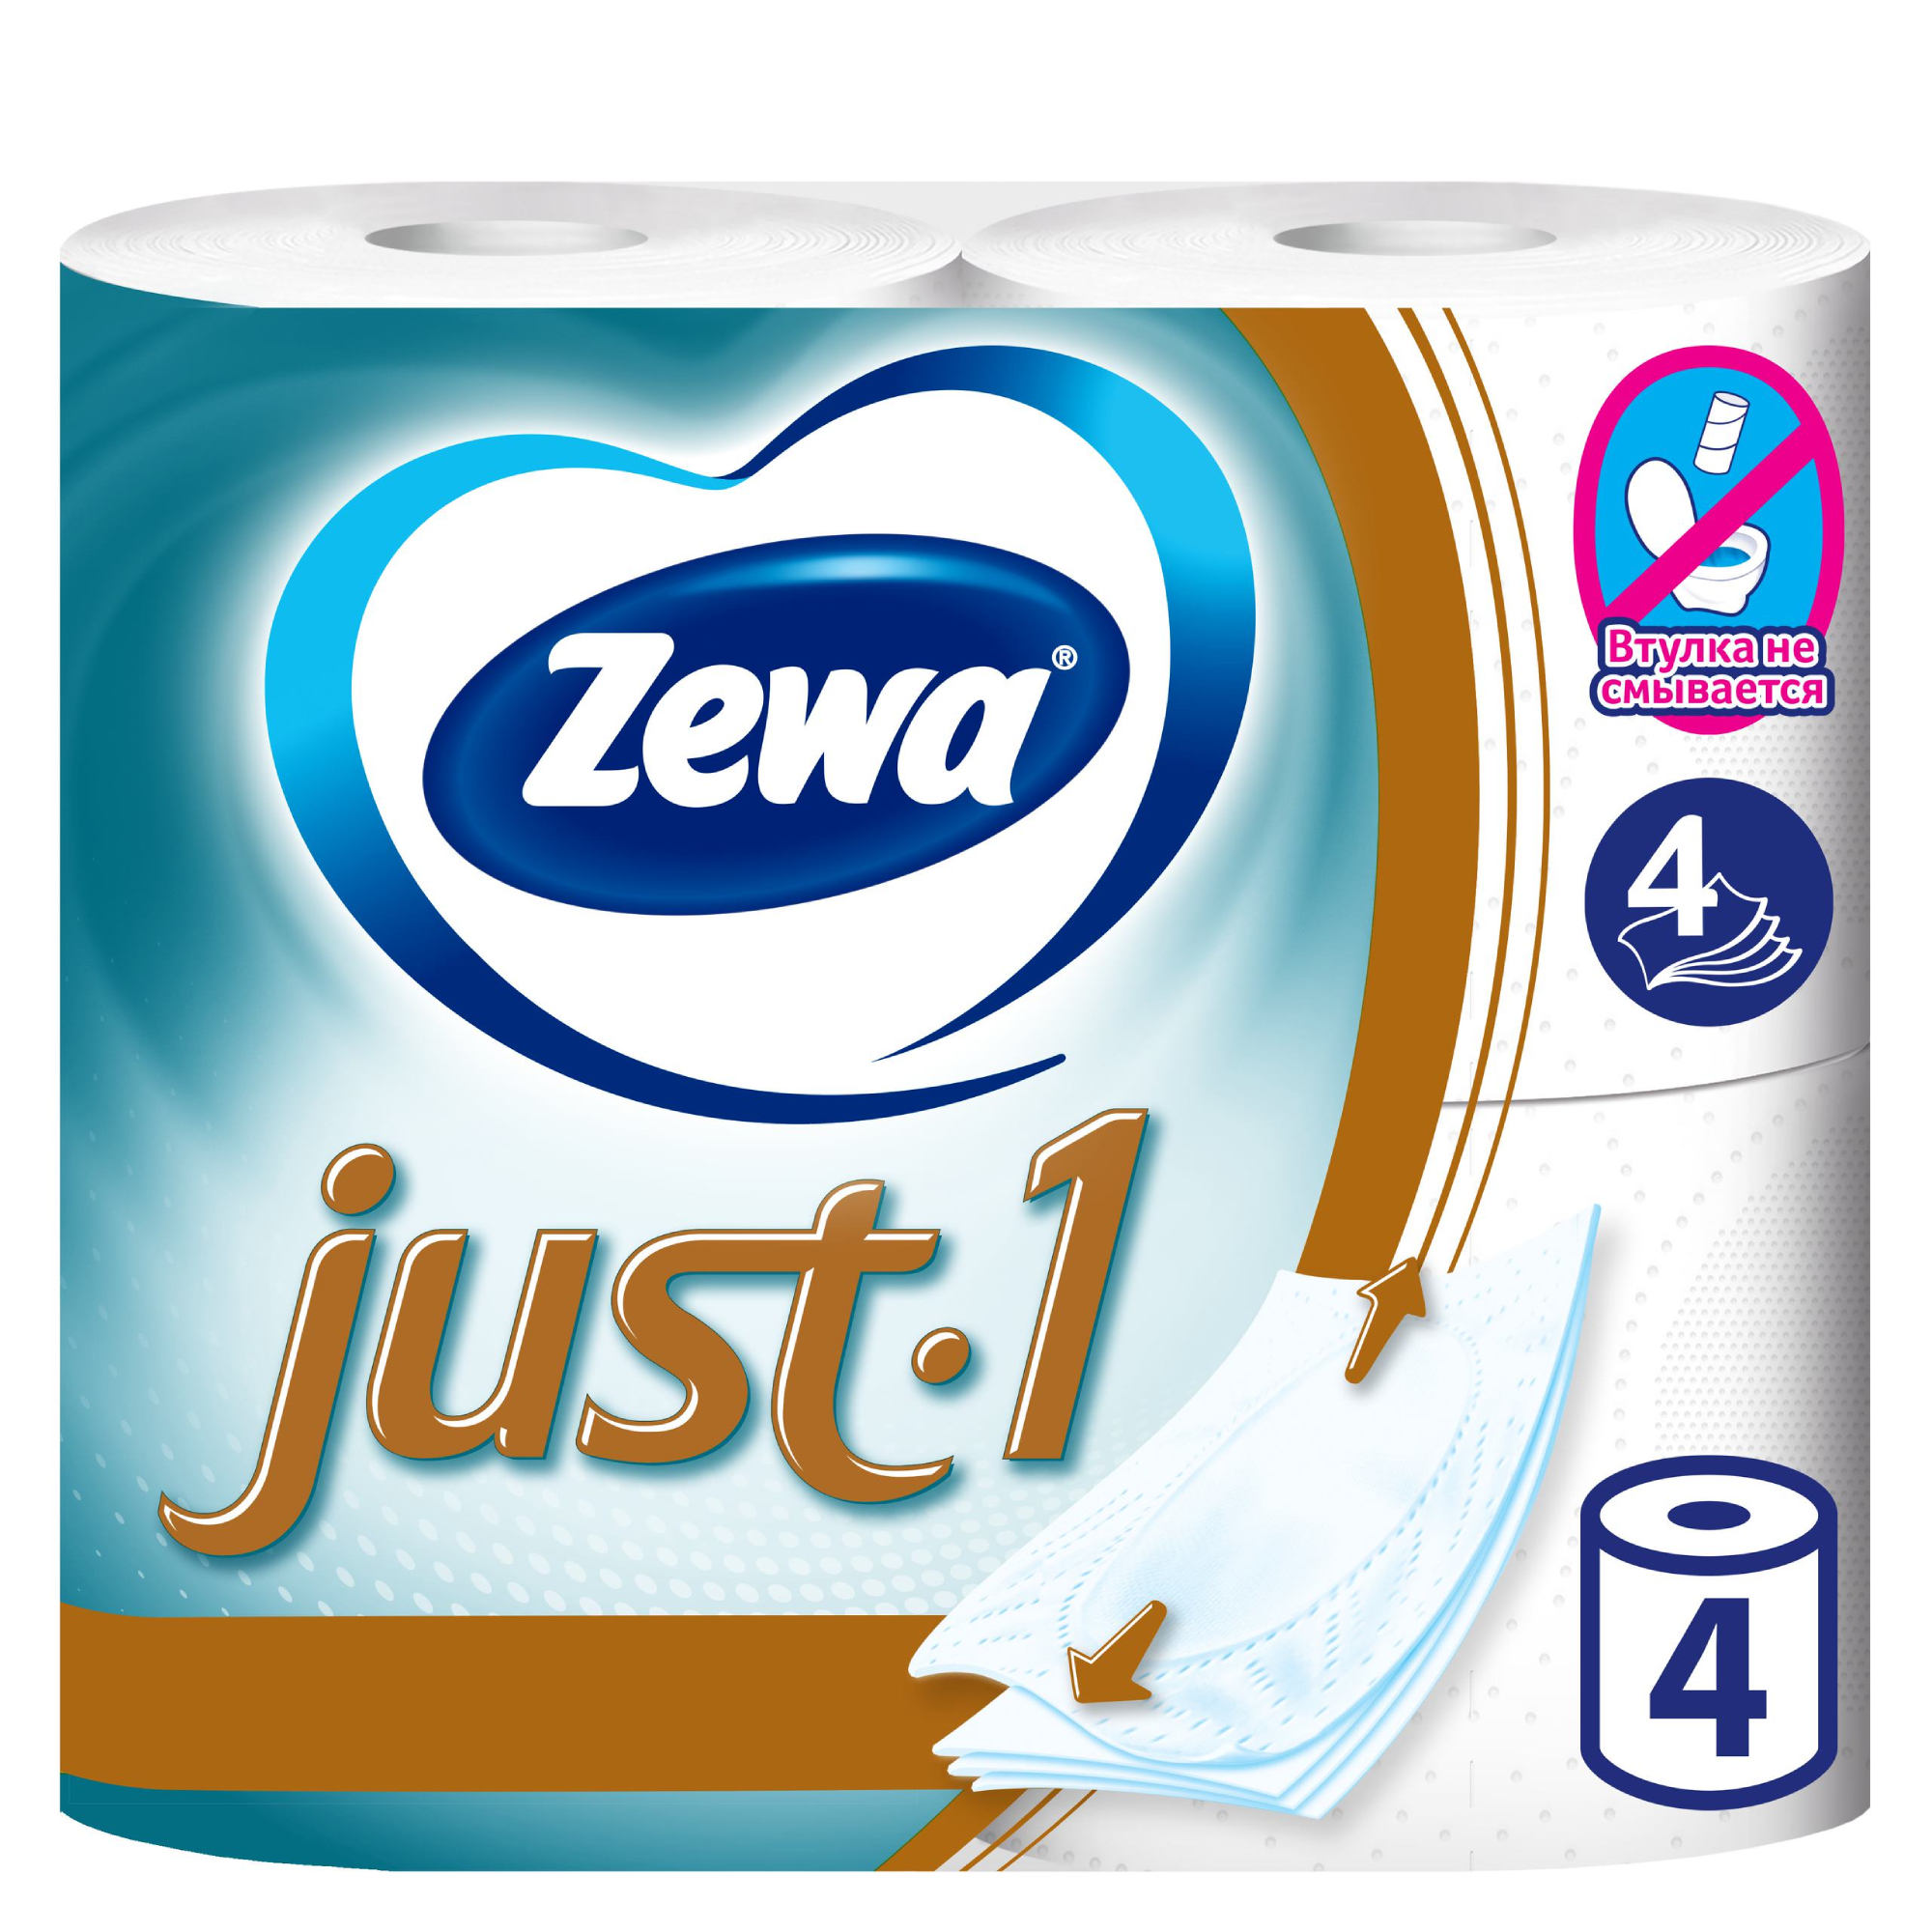 Туалетная бумага Zewa Just 1, 4 слоя, 4 рулона туалетная бумага zewa